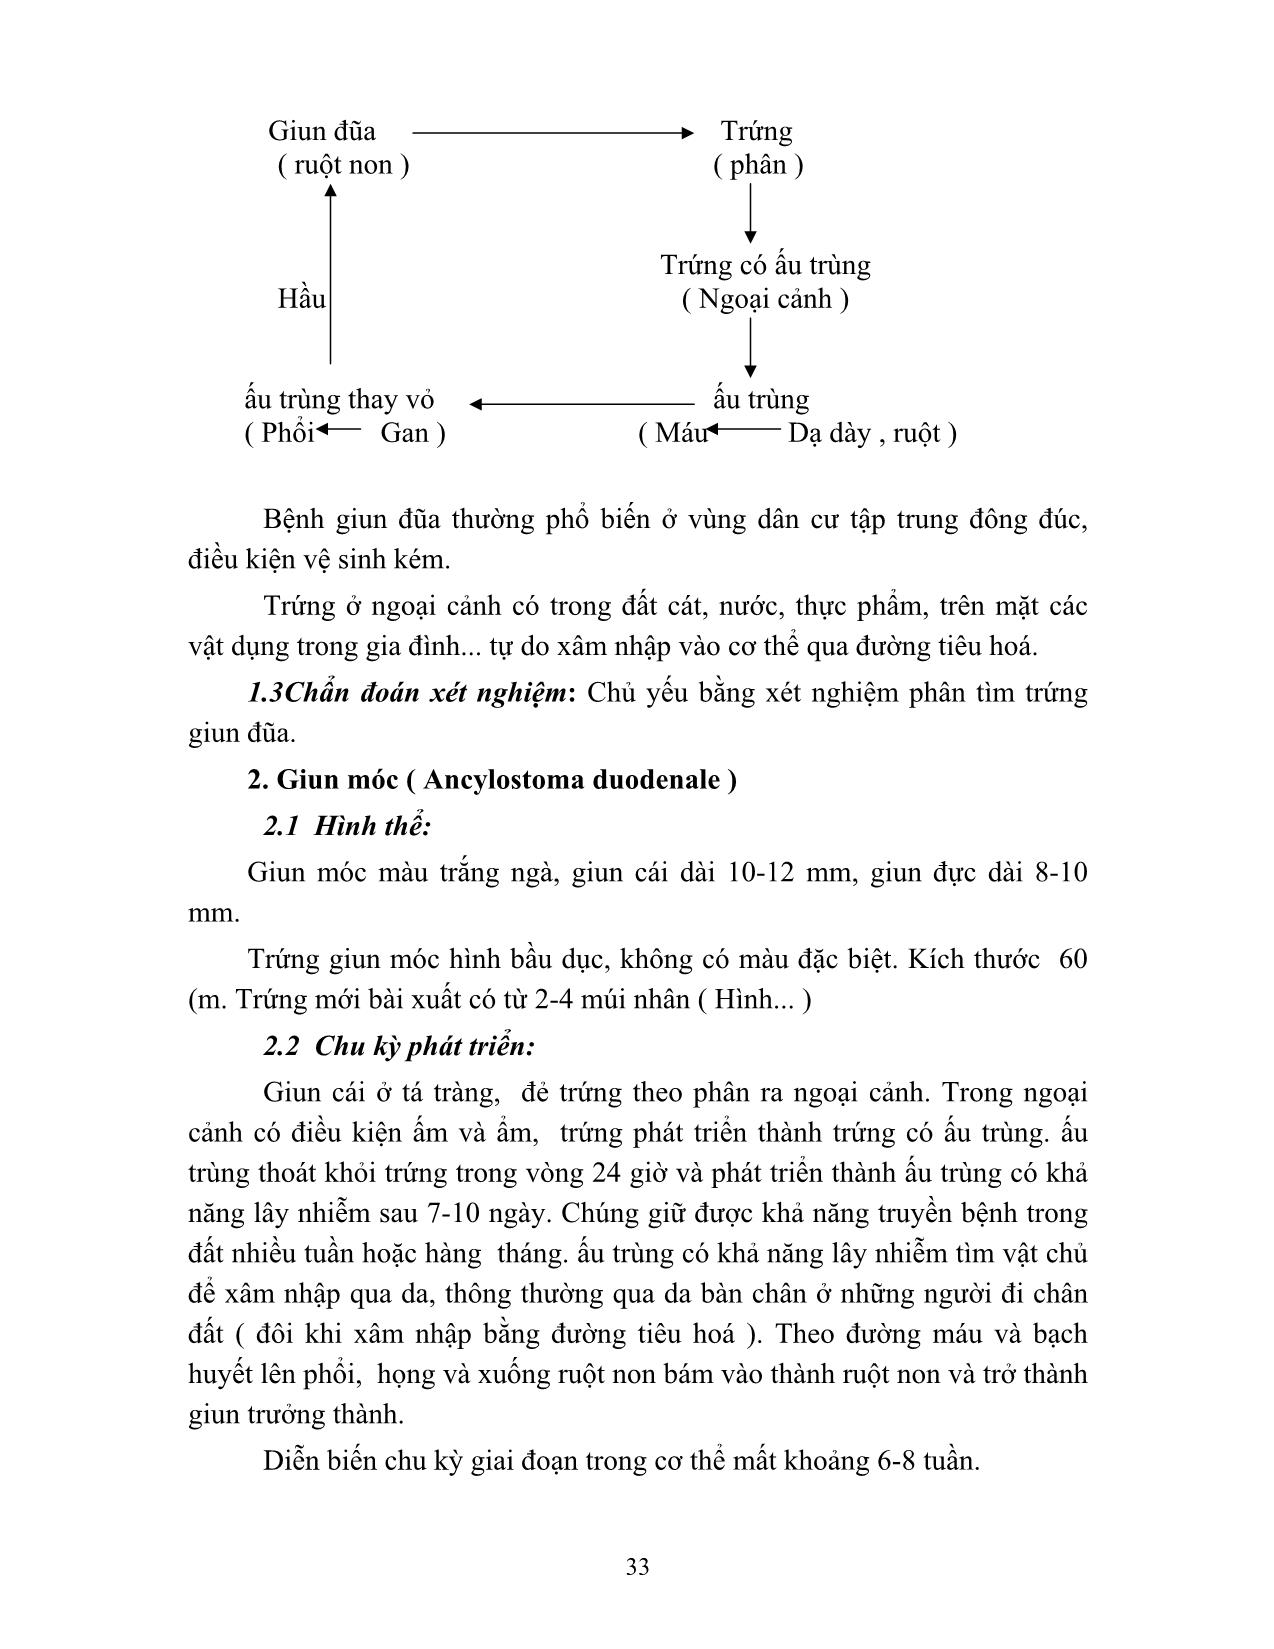 Giáo trình Vi sinh - Ký sinh trùng (Phần 2) trang 2